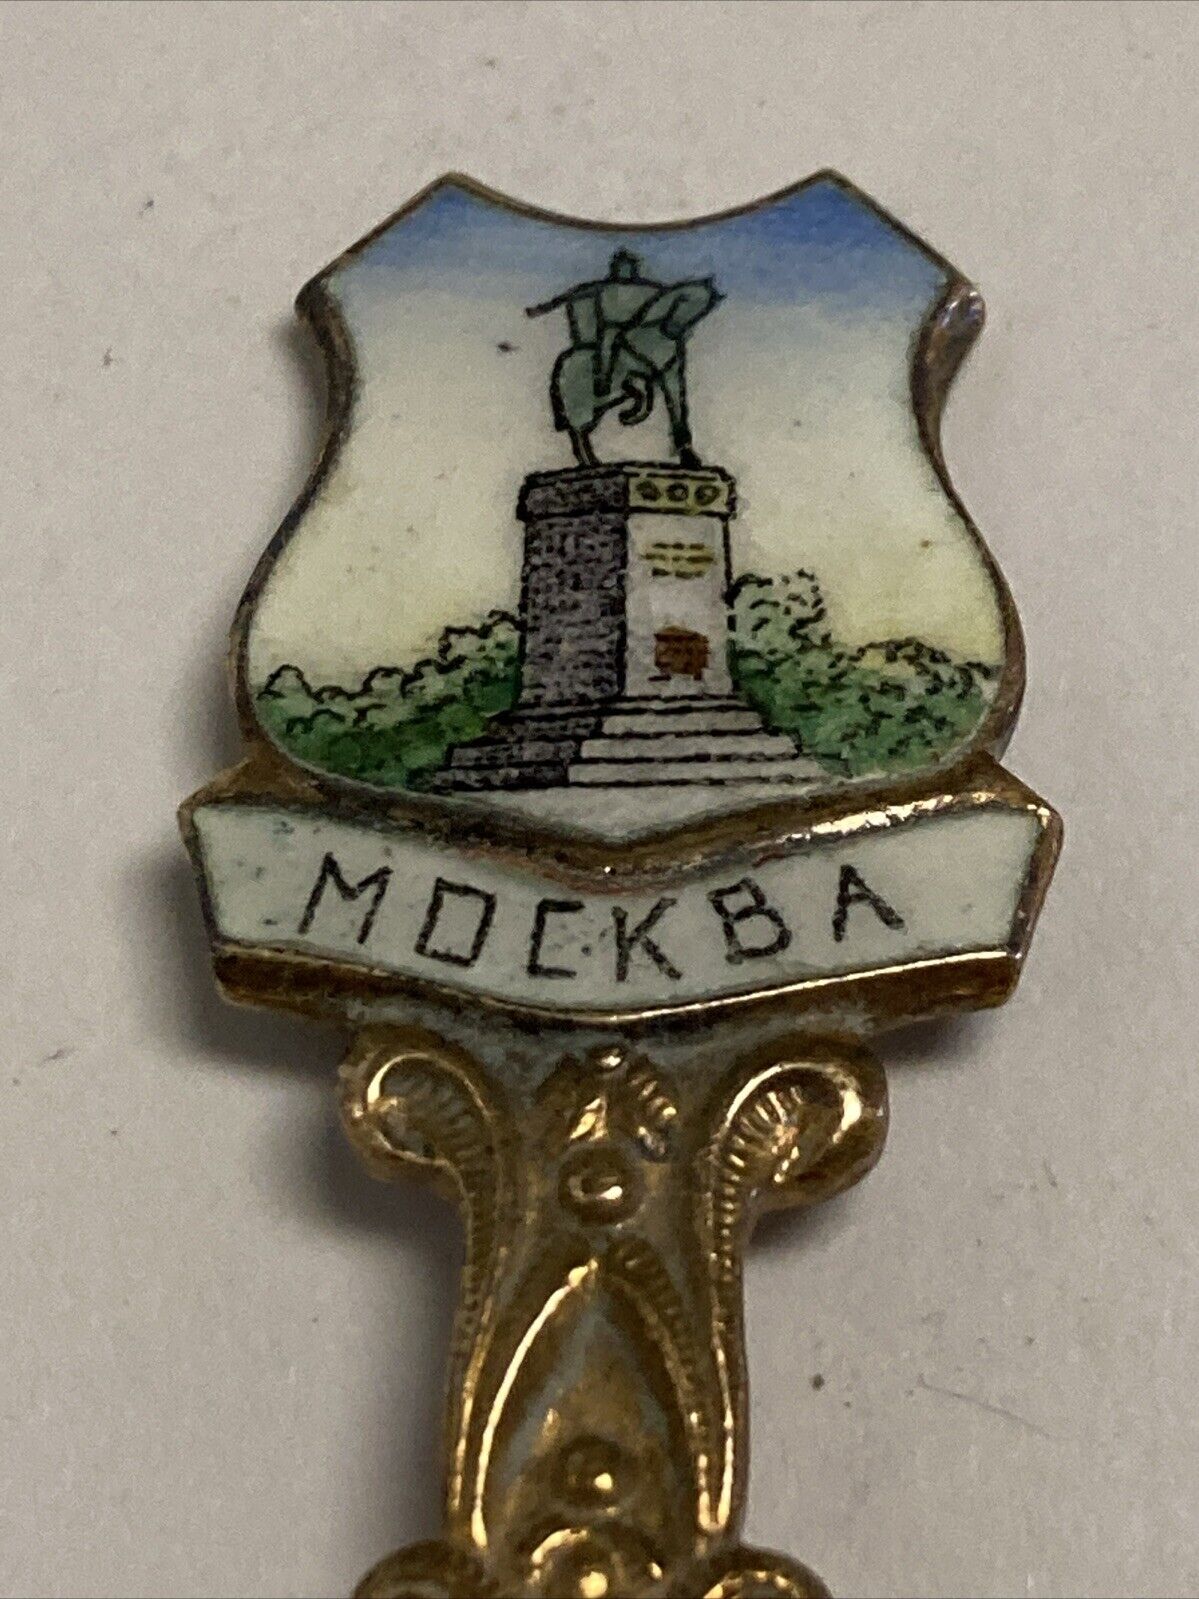 Mockba Moscow Vintage Souvenir Spoon Collectible